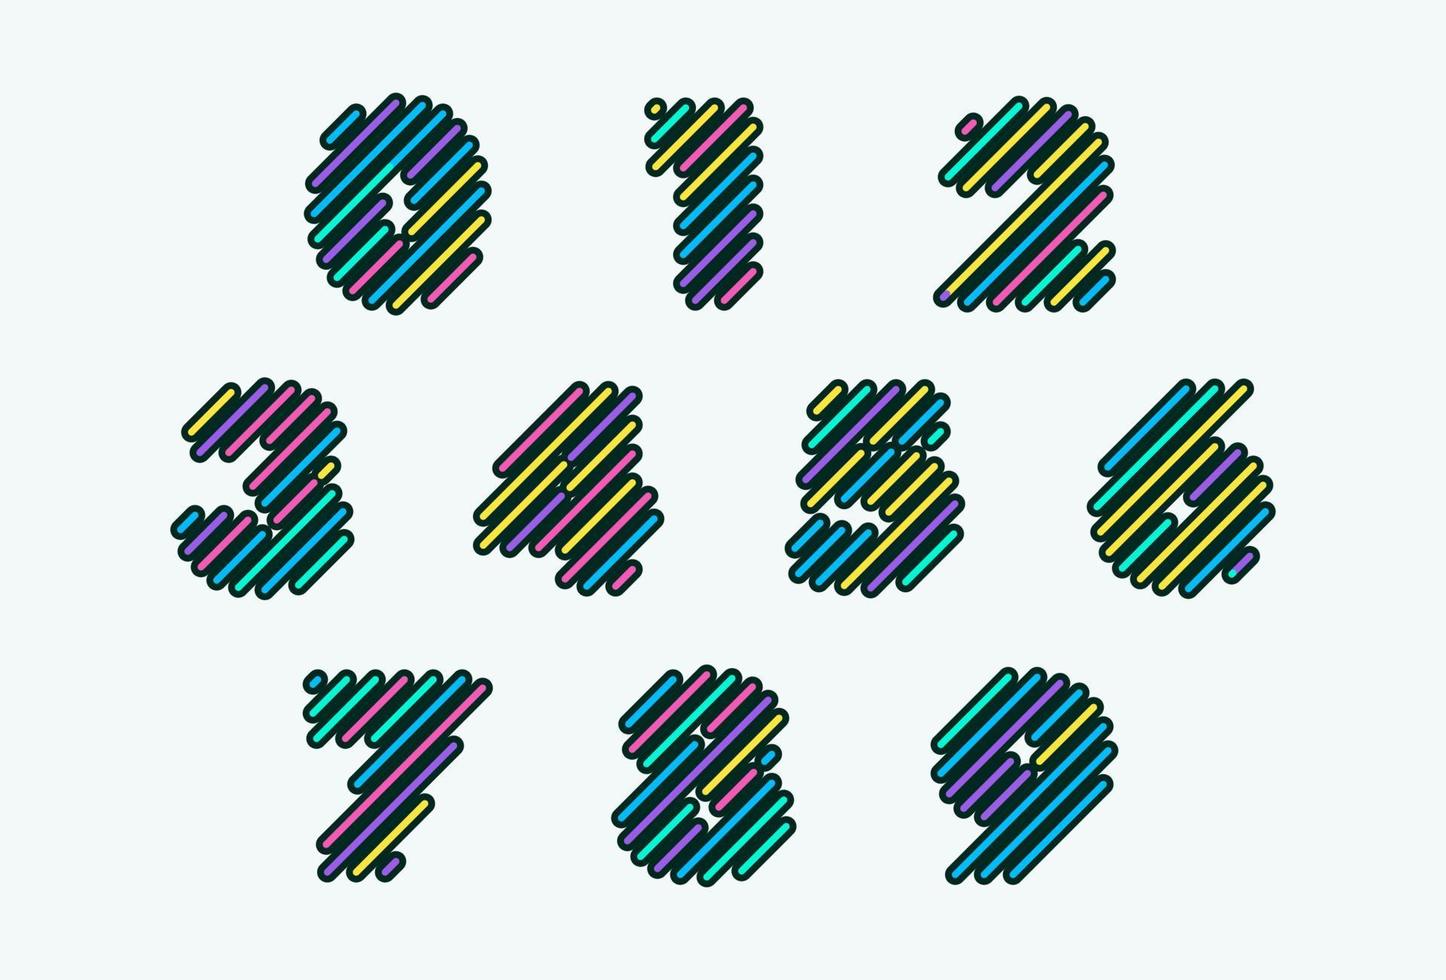 Los números modernos coloridos fijaron el ejemplo del vector de la plantilla del diseño del elemento cómico.